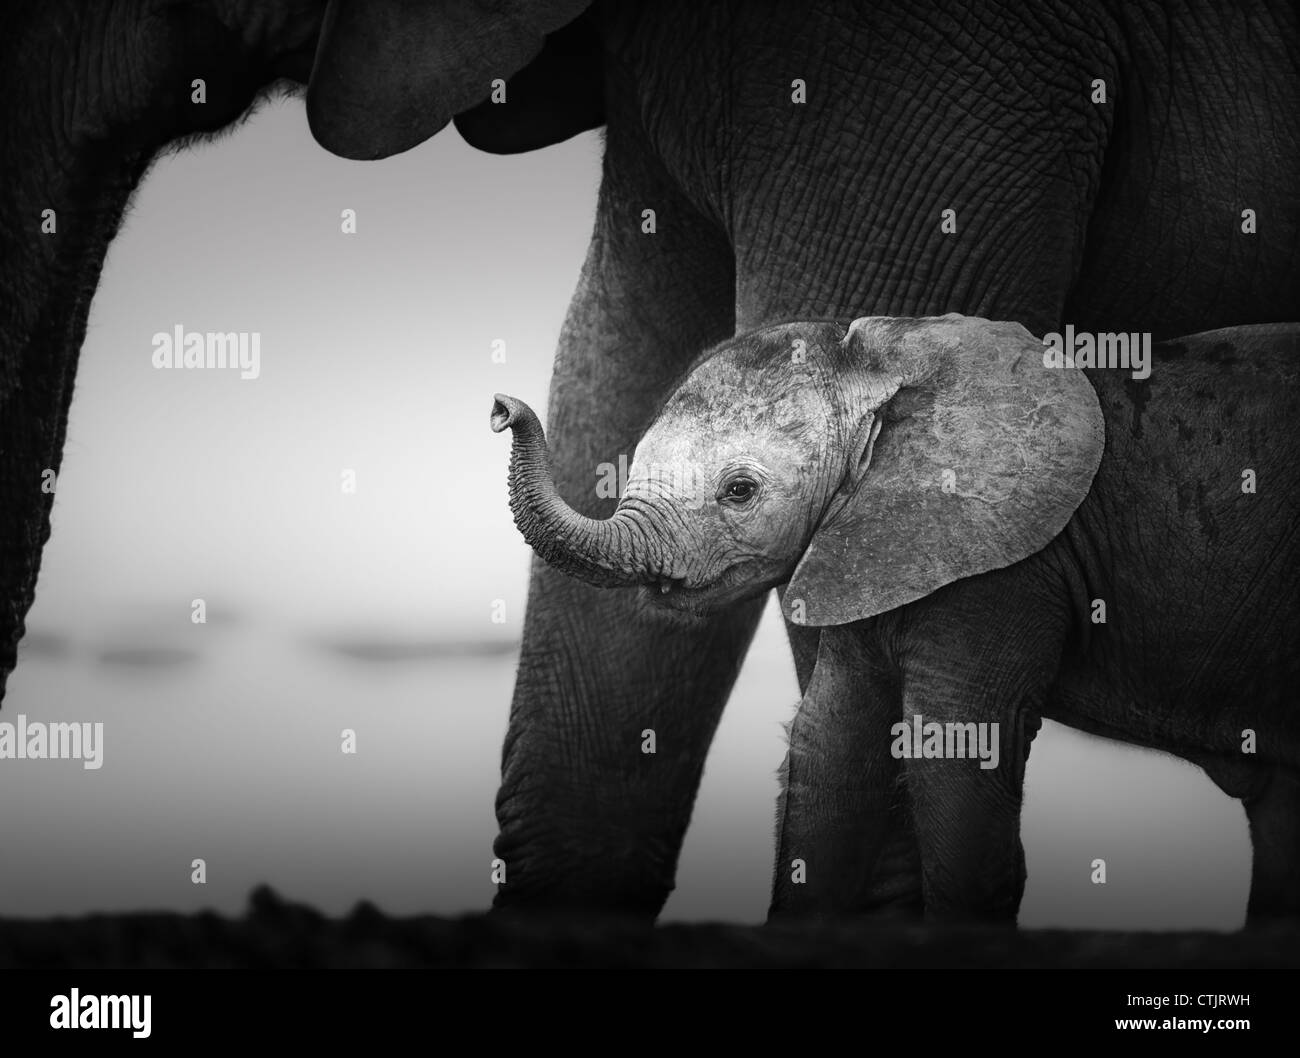 Baby-Elefant neben Kuh (künstlerische Verarbeitung) Addo National Park - Südafrika Stockfoto